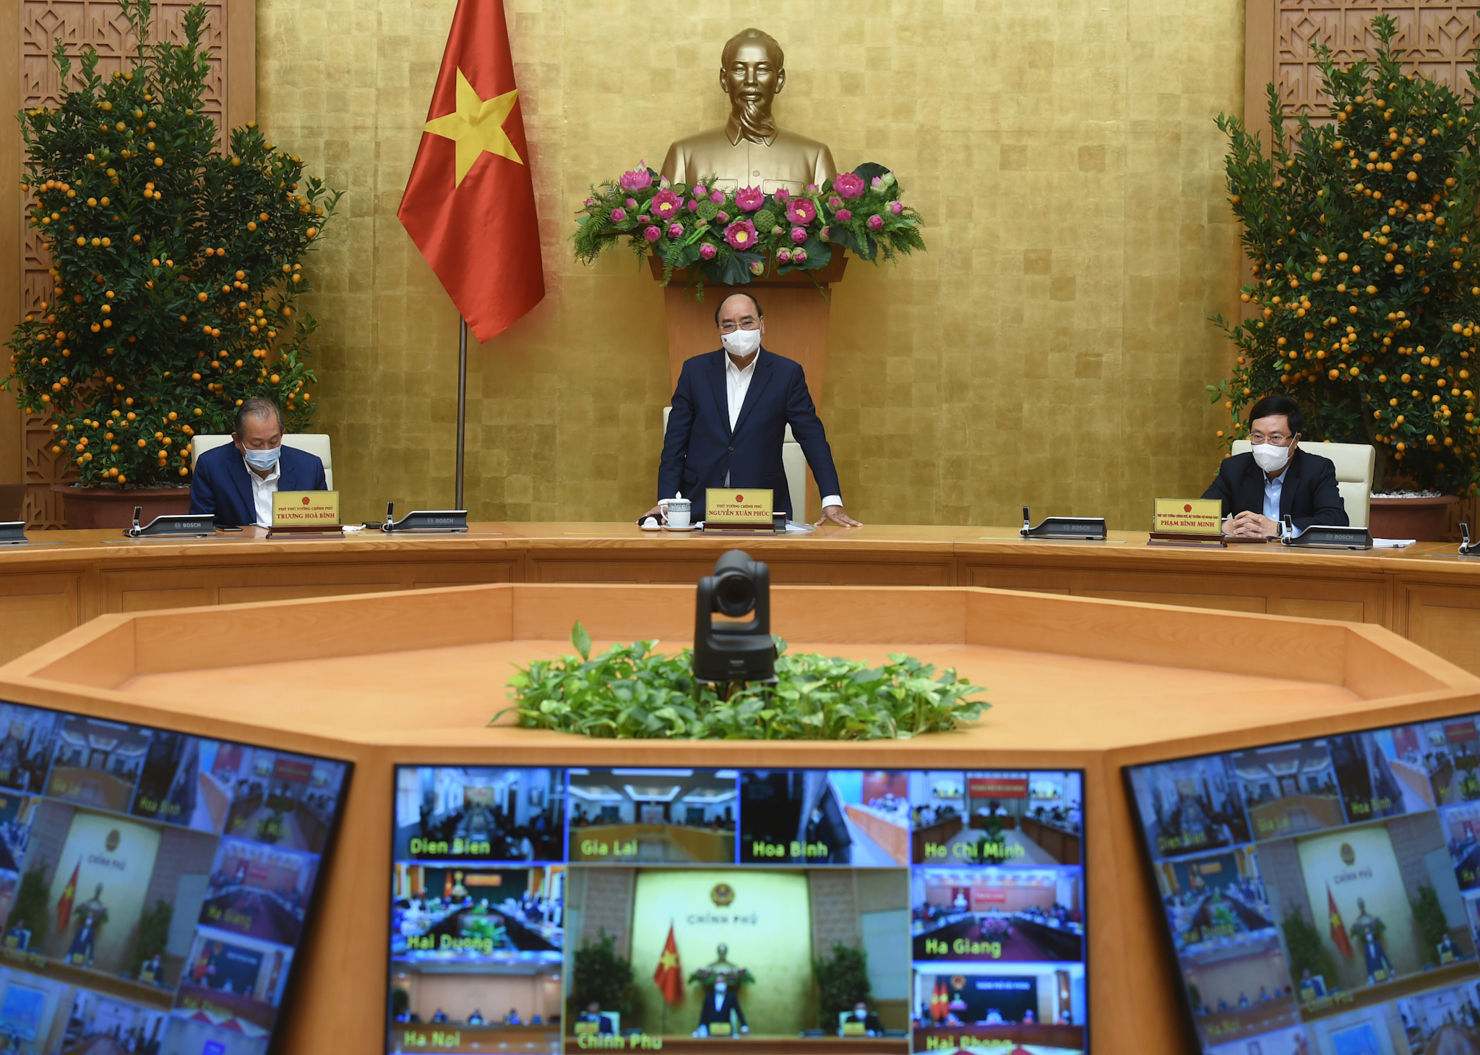  Thủ tướng Chính phủ Nguyễn Xuân Phúc chỉ đạo cuộc họp Thường trực Chính phủ ngày 24/2 về công tác phòng chống dịch Covid-19. Nguồn: baochinhphu.vn